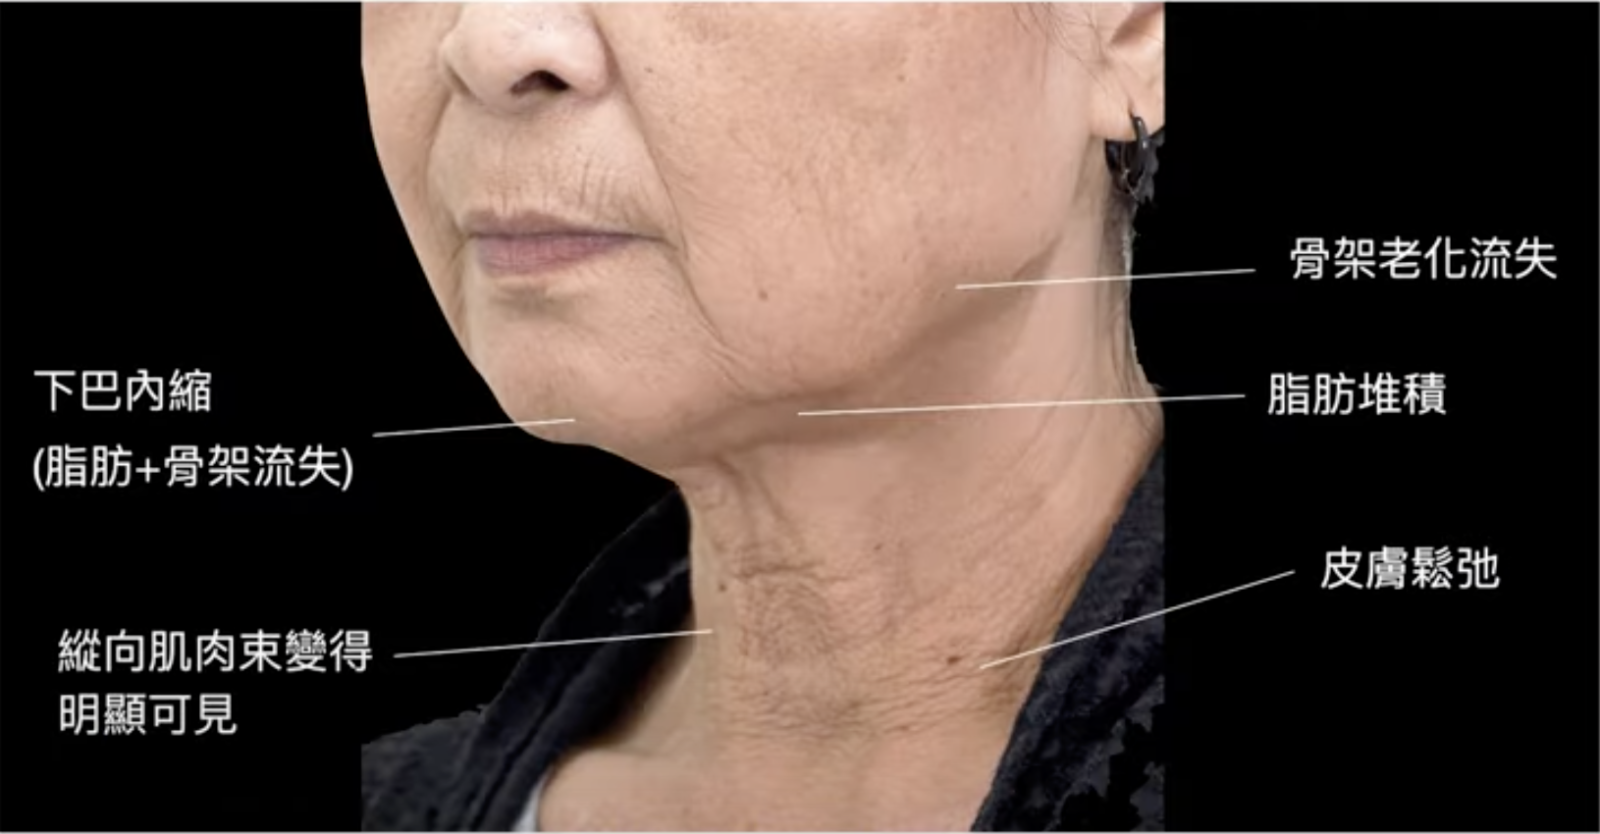 臉部和頸部皮膚的老化通常是相互關聯的，並且彼此可能相互影響，所以臉部的老化也會直接影響到頸紋的形態和嚴重程度